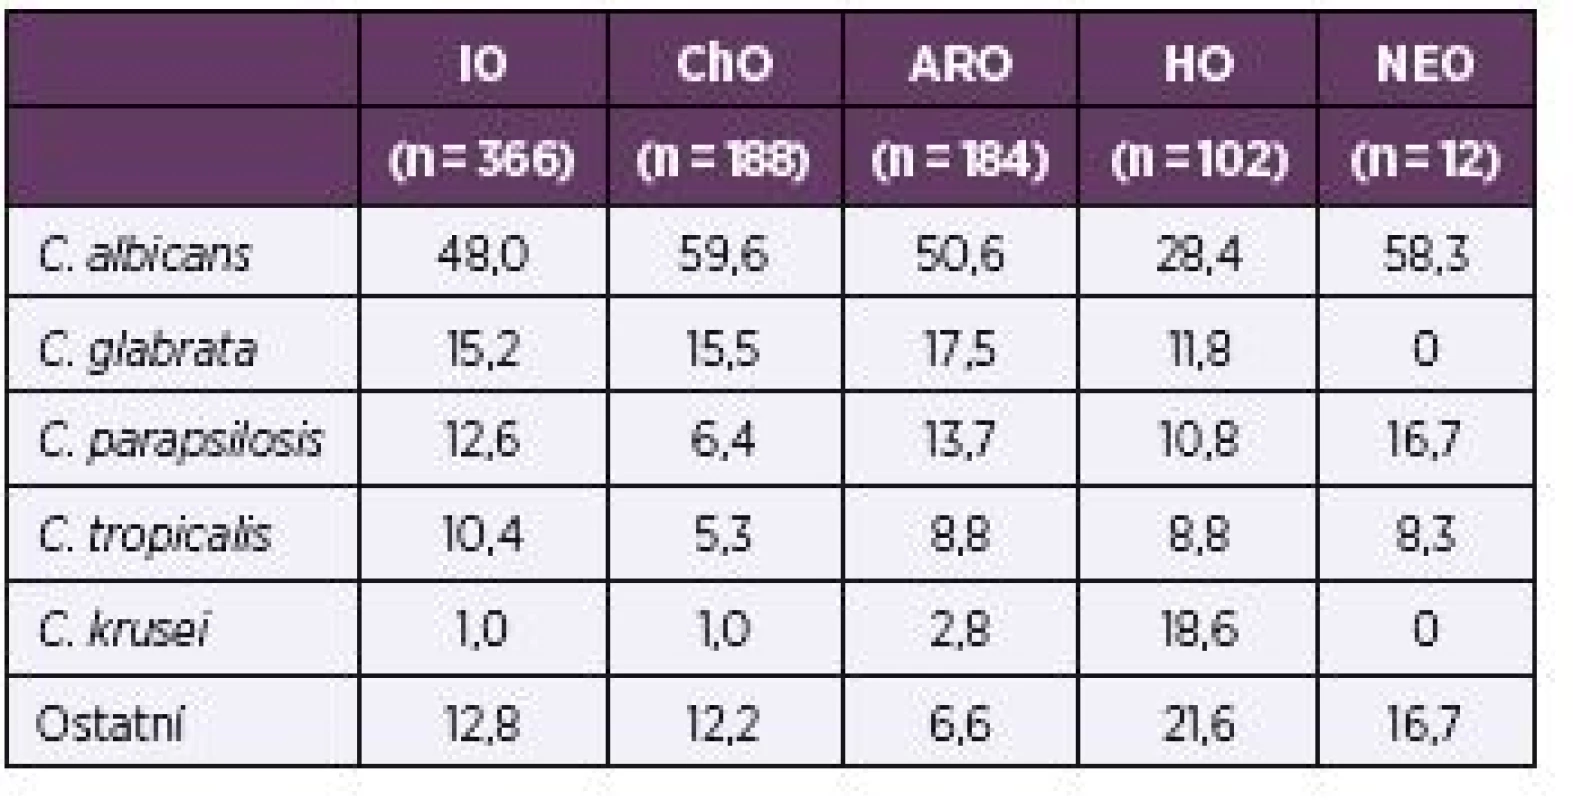 Rozložení nejčastěji izolovaných kmenů podle odborností v procentech
Table 5. Distribution of the most common strains, in percentages, by specialty